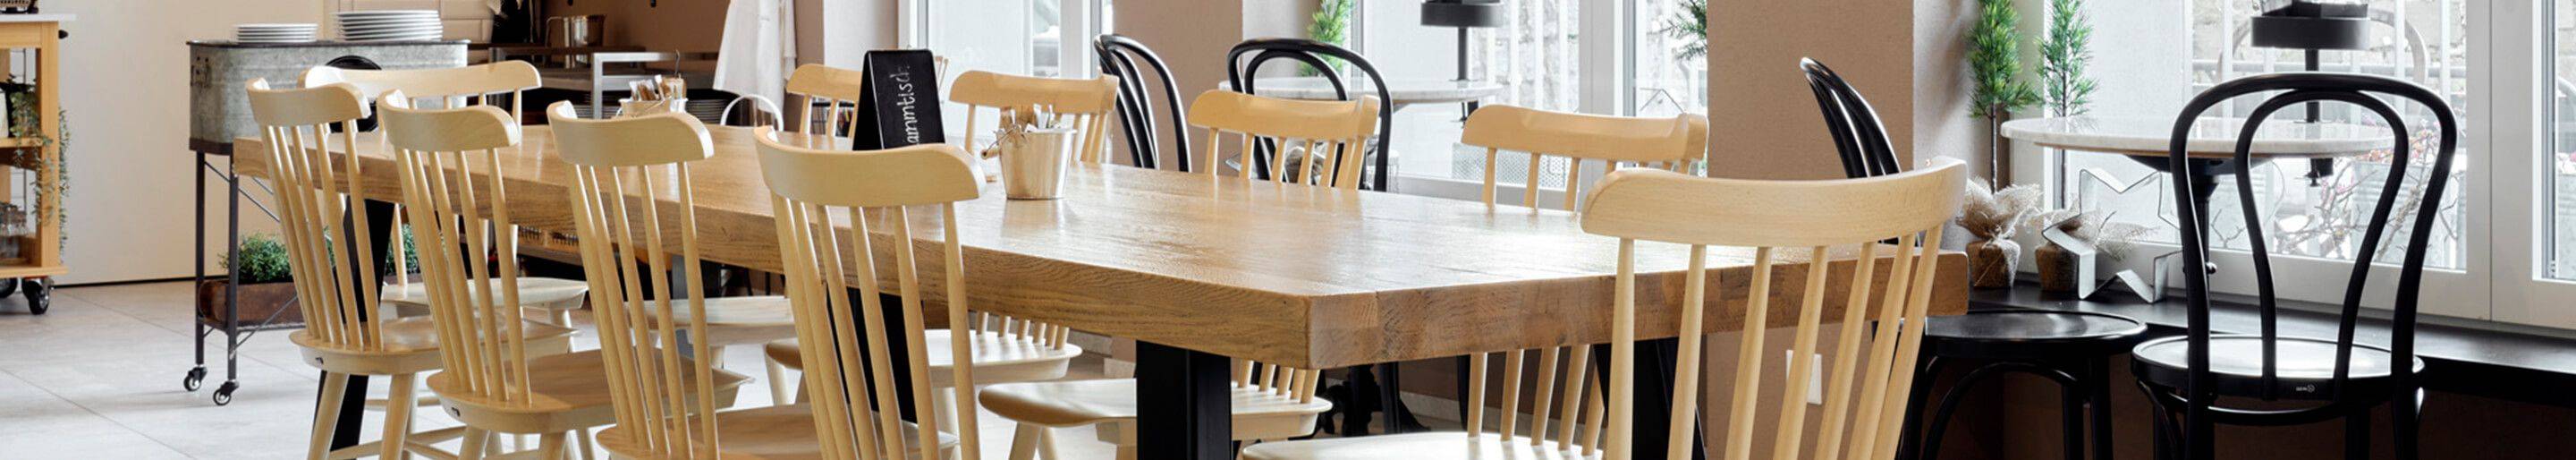 Indoor Holzstühle für Gastronomie oder Hotellerie